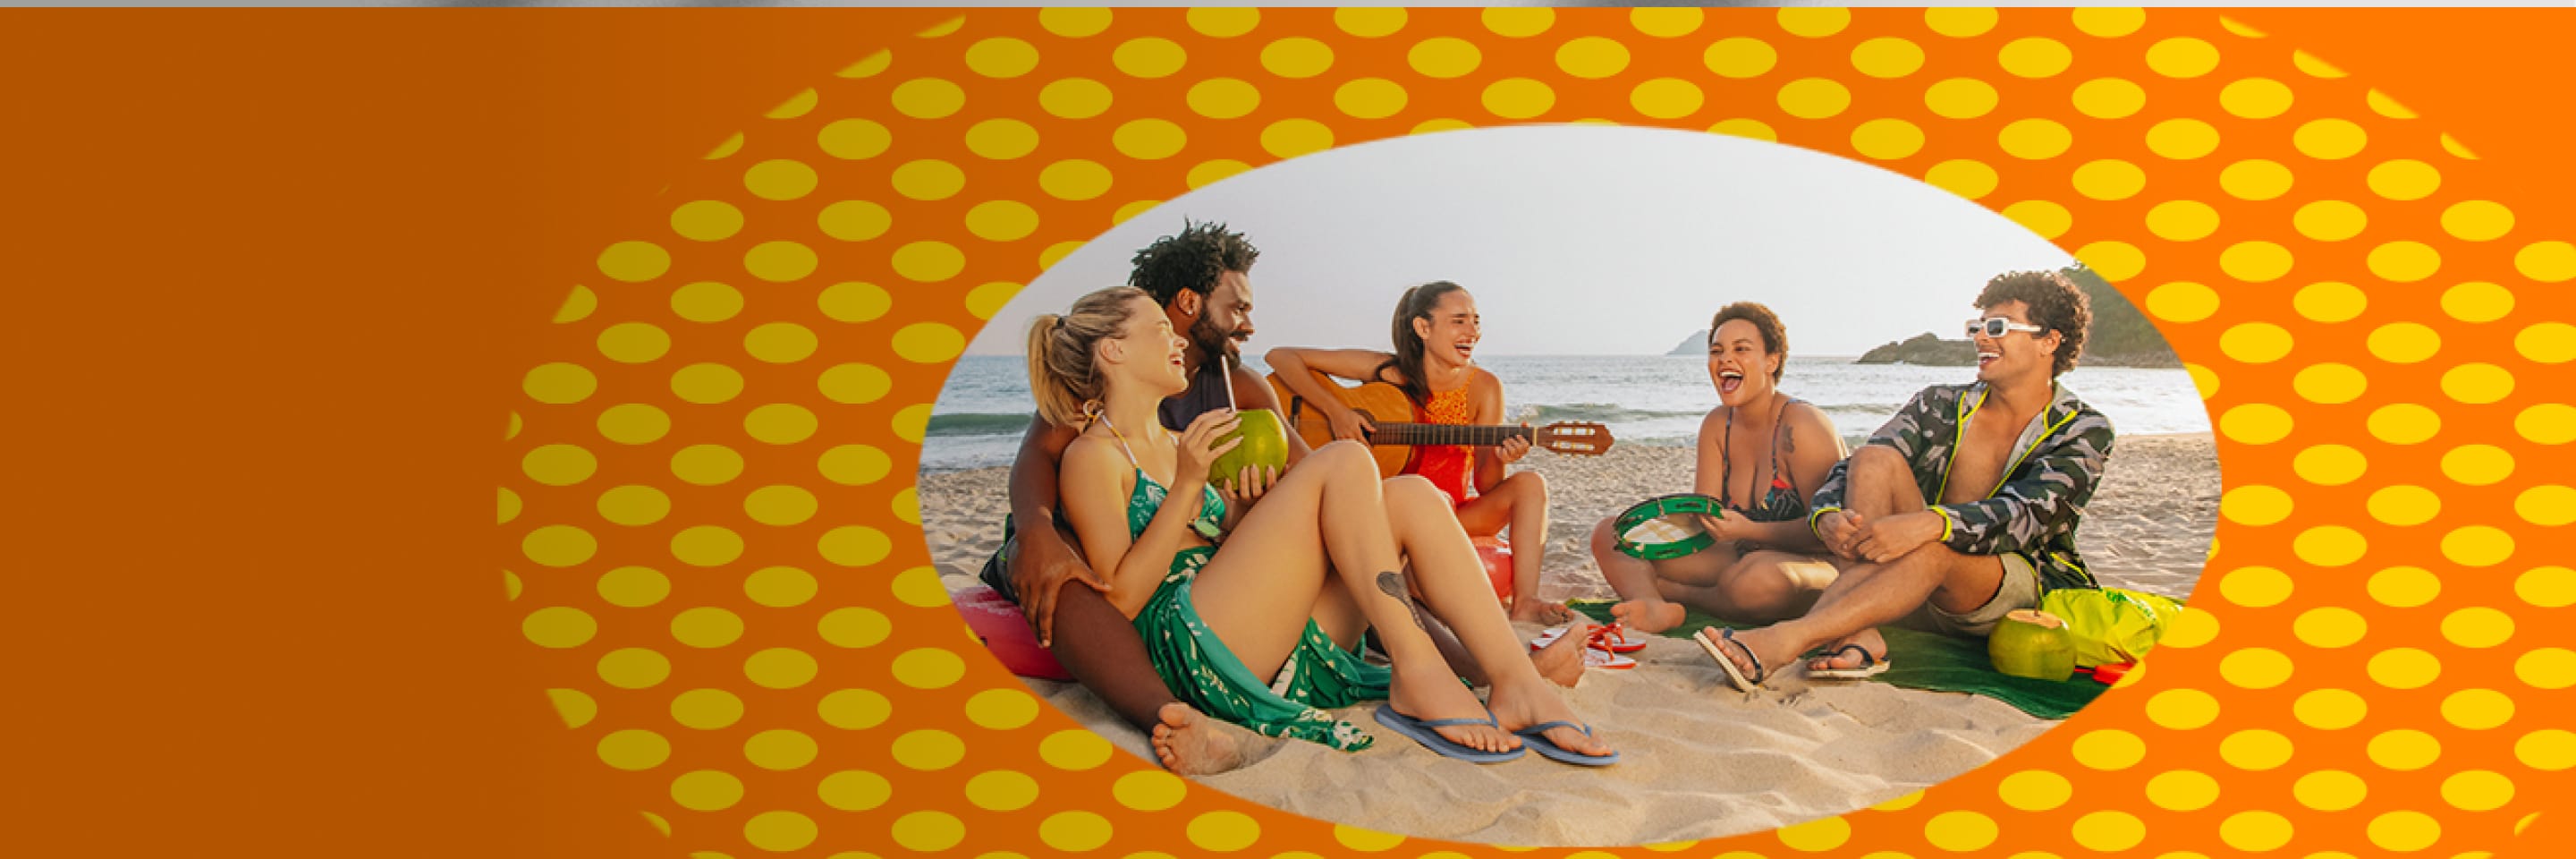 Imagen de cinco jovenes en una playa sentados en la arena, vinten trajes de baño sandalias y estan cantando. HAVAIANAS